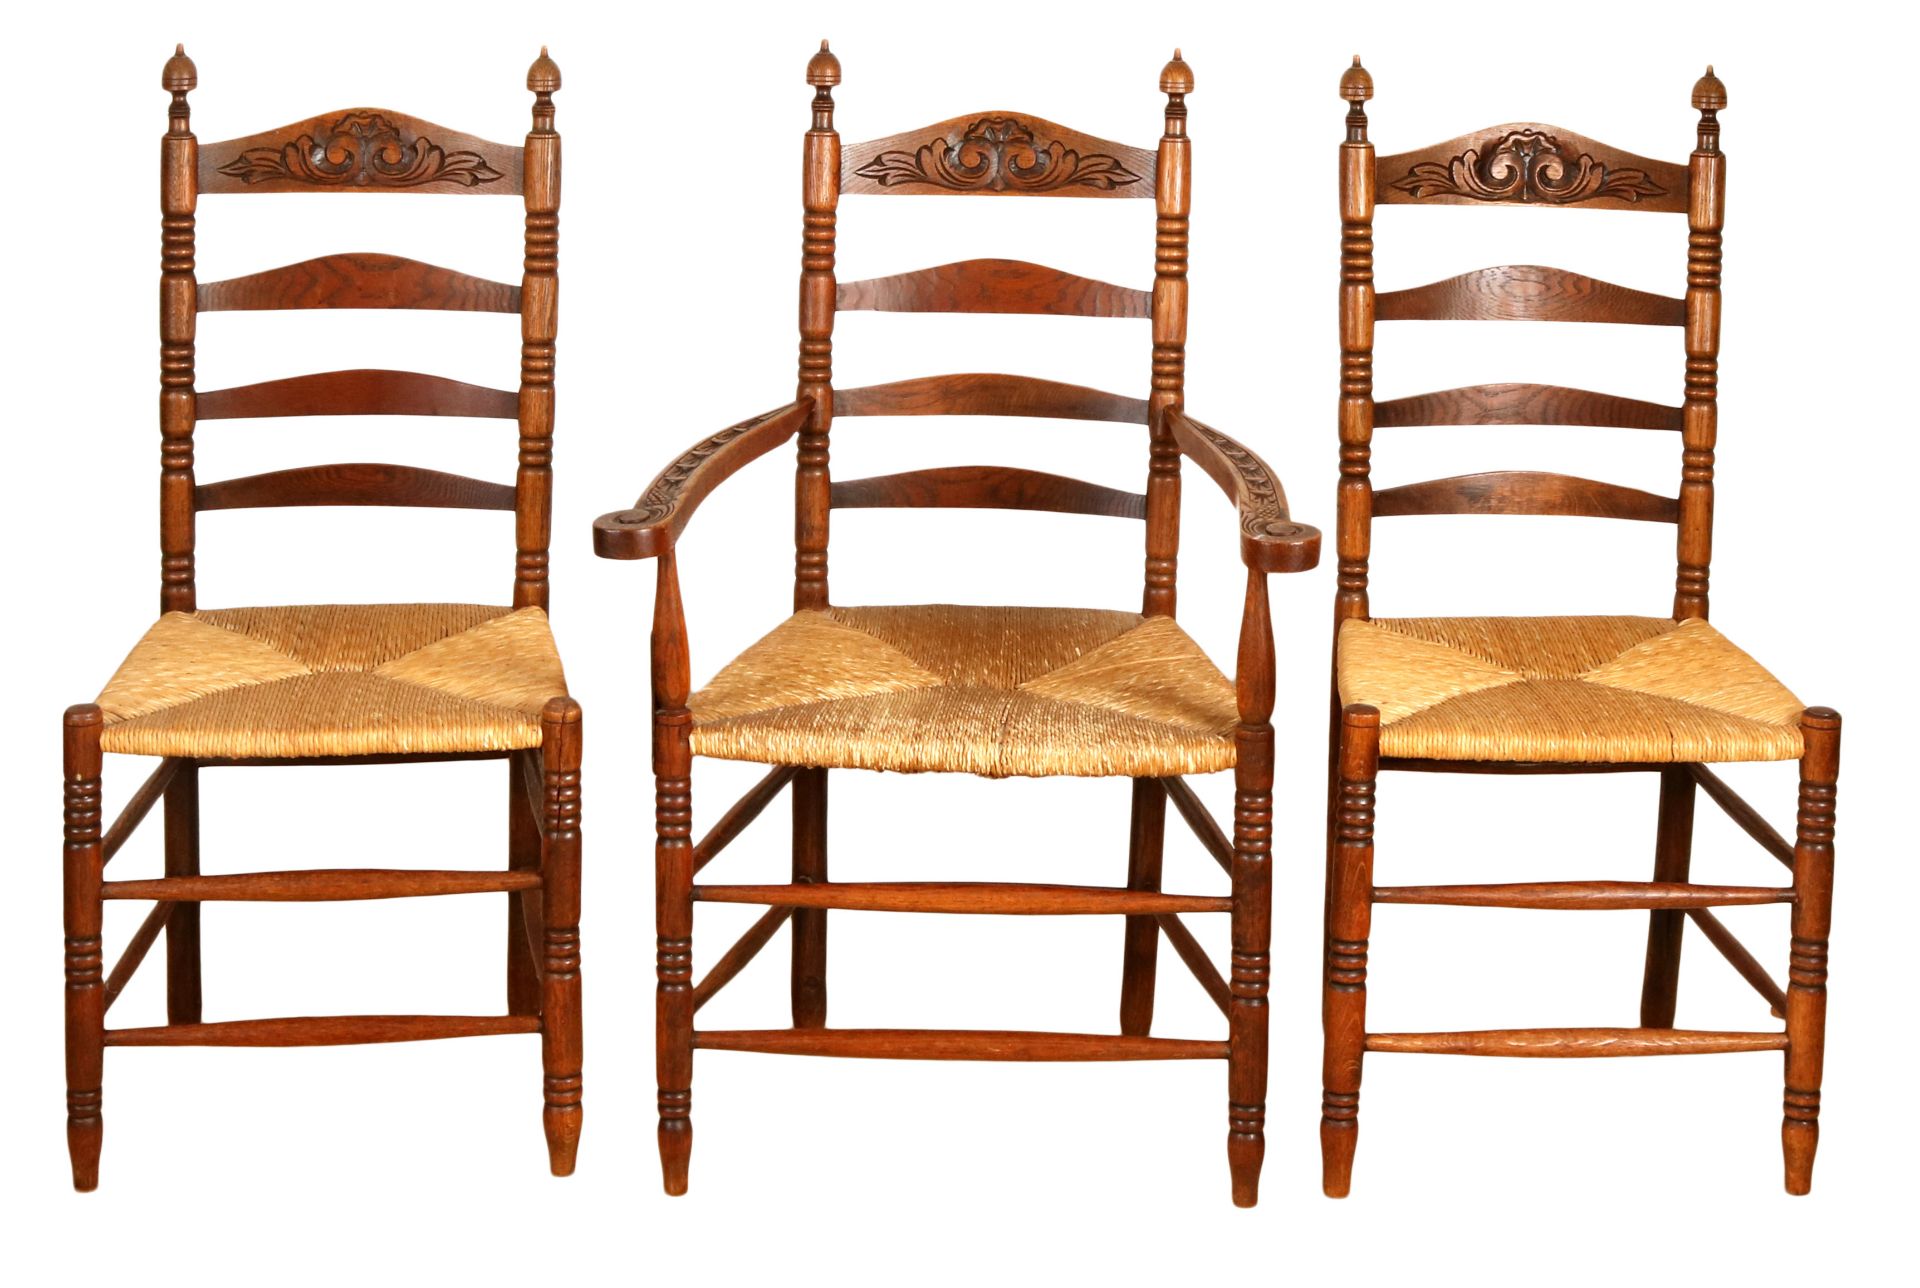 4 Stühle und 1 Armlehnstuhl, Friesland um 1870, Eiche, Sitz mit Binsengeflecht, 104 x 48 x 4